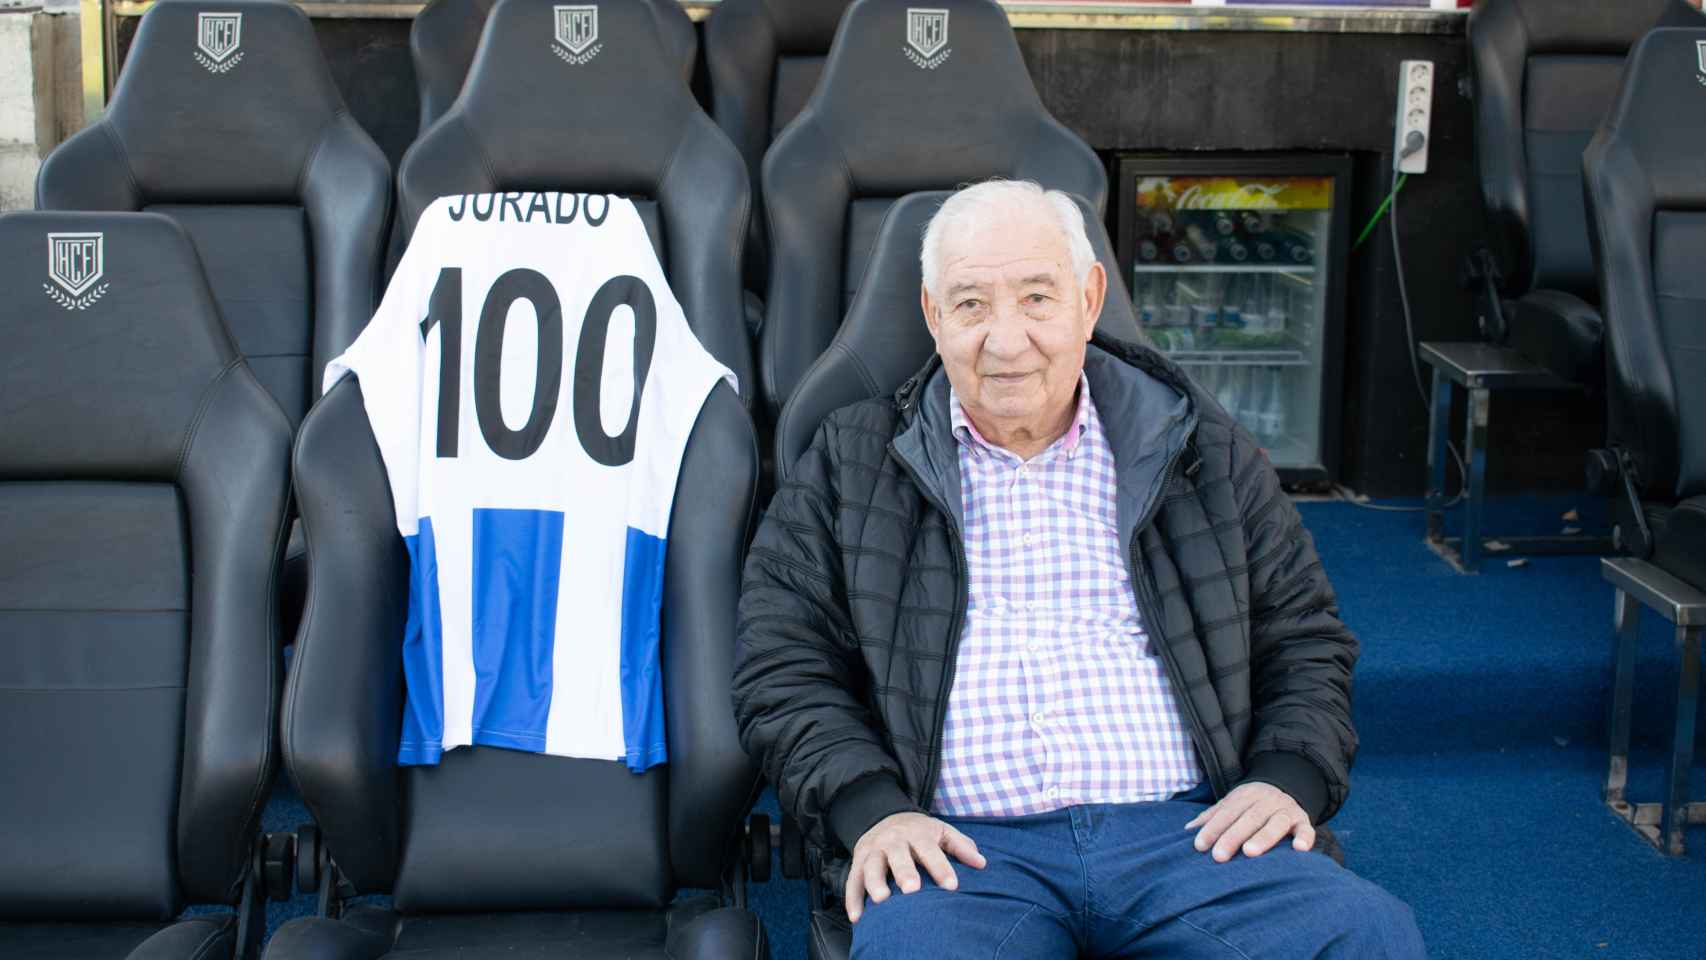 Carlos Jurado pasa a formar parte de los embajadores del centenario del Hércules de Alicante.